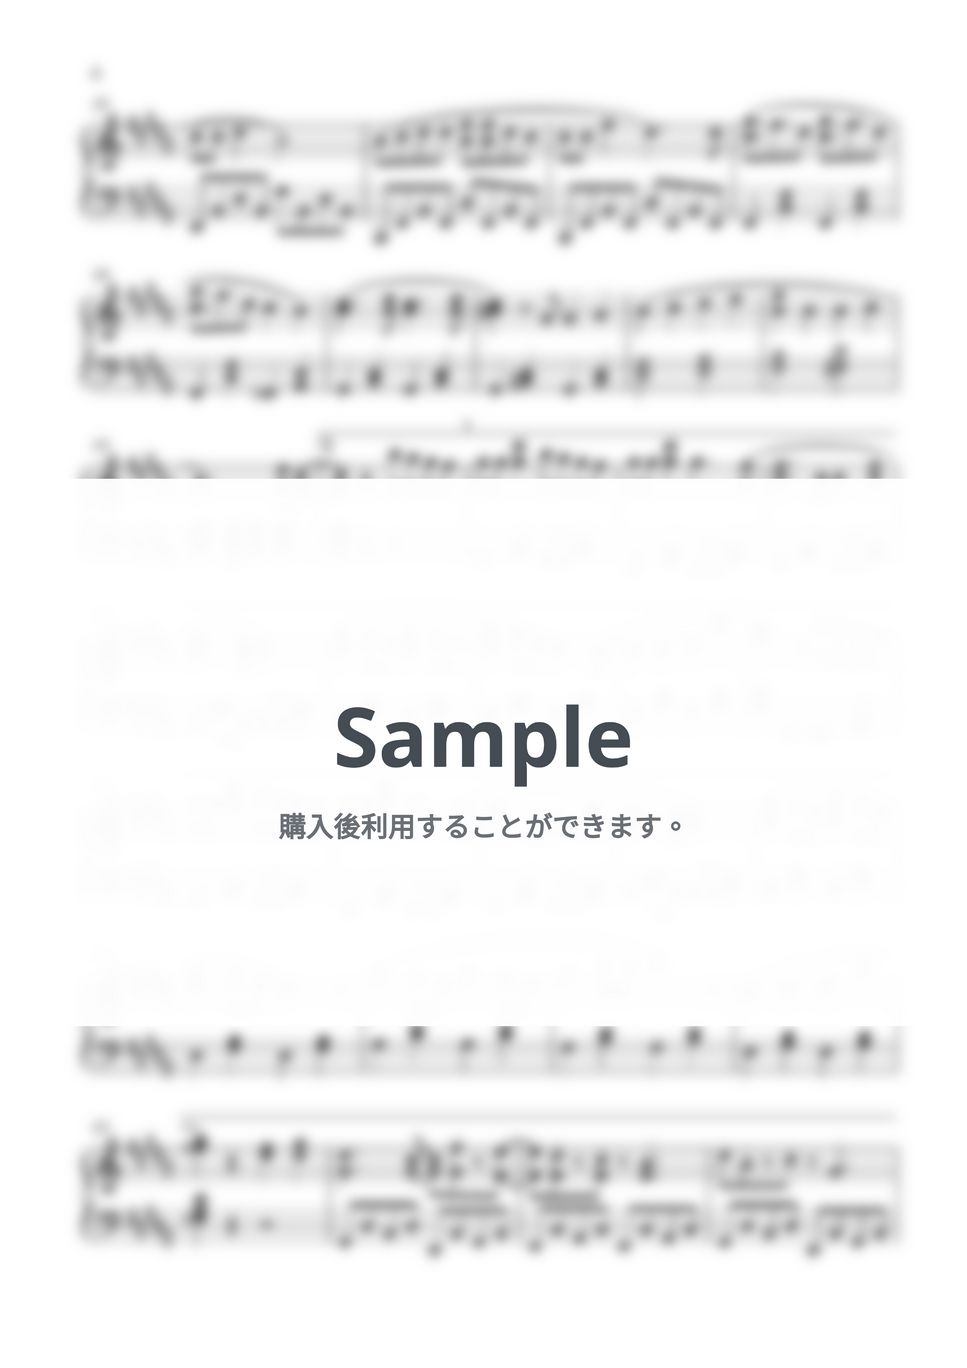 Aimer - 残響散歌 (鬼滅の刃 / ピアノ楽譜 / 初級) by Piano Lovers. jp